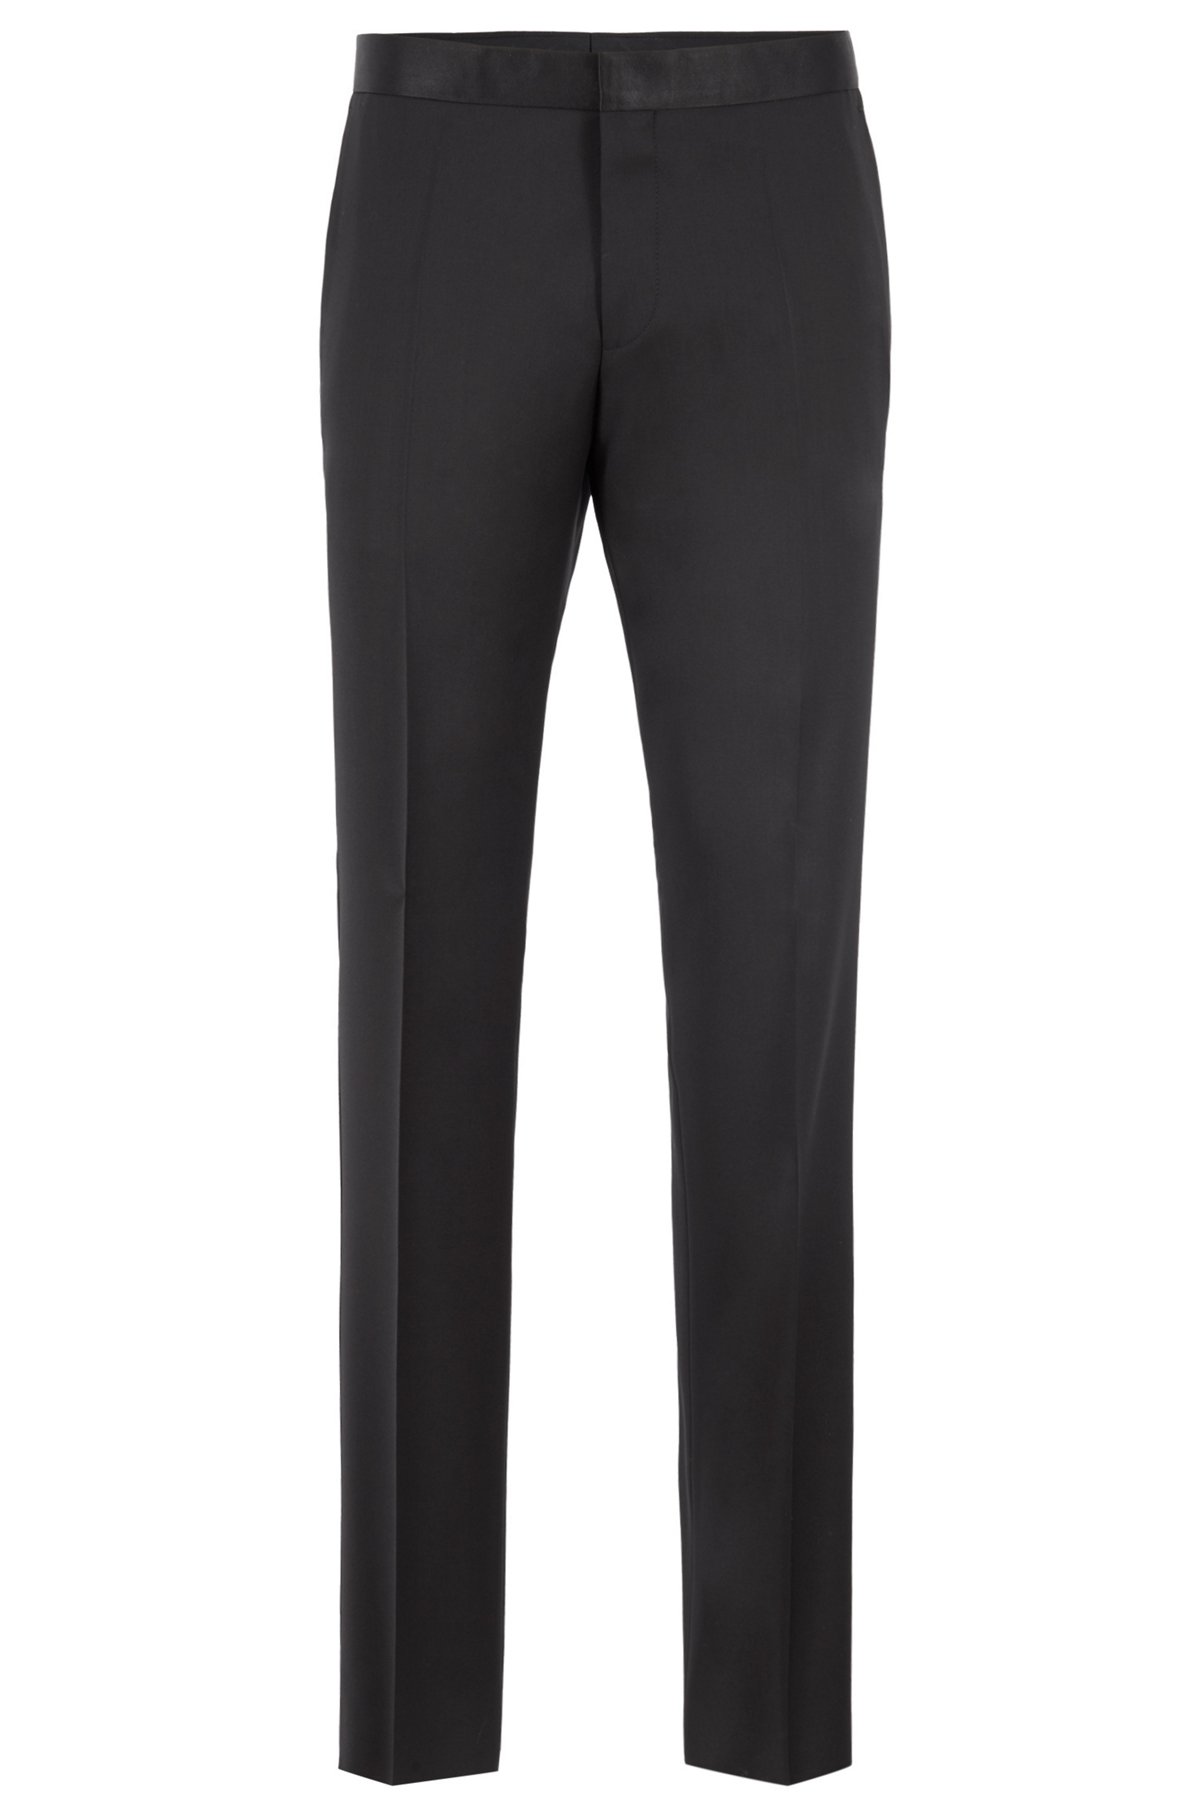 Slim-fit tuxedo in virgin wool with silk trims, Black